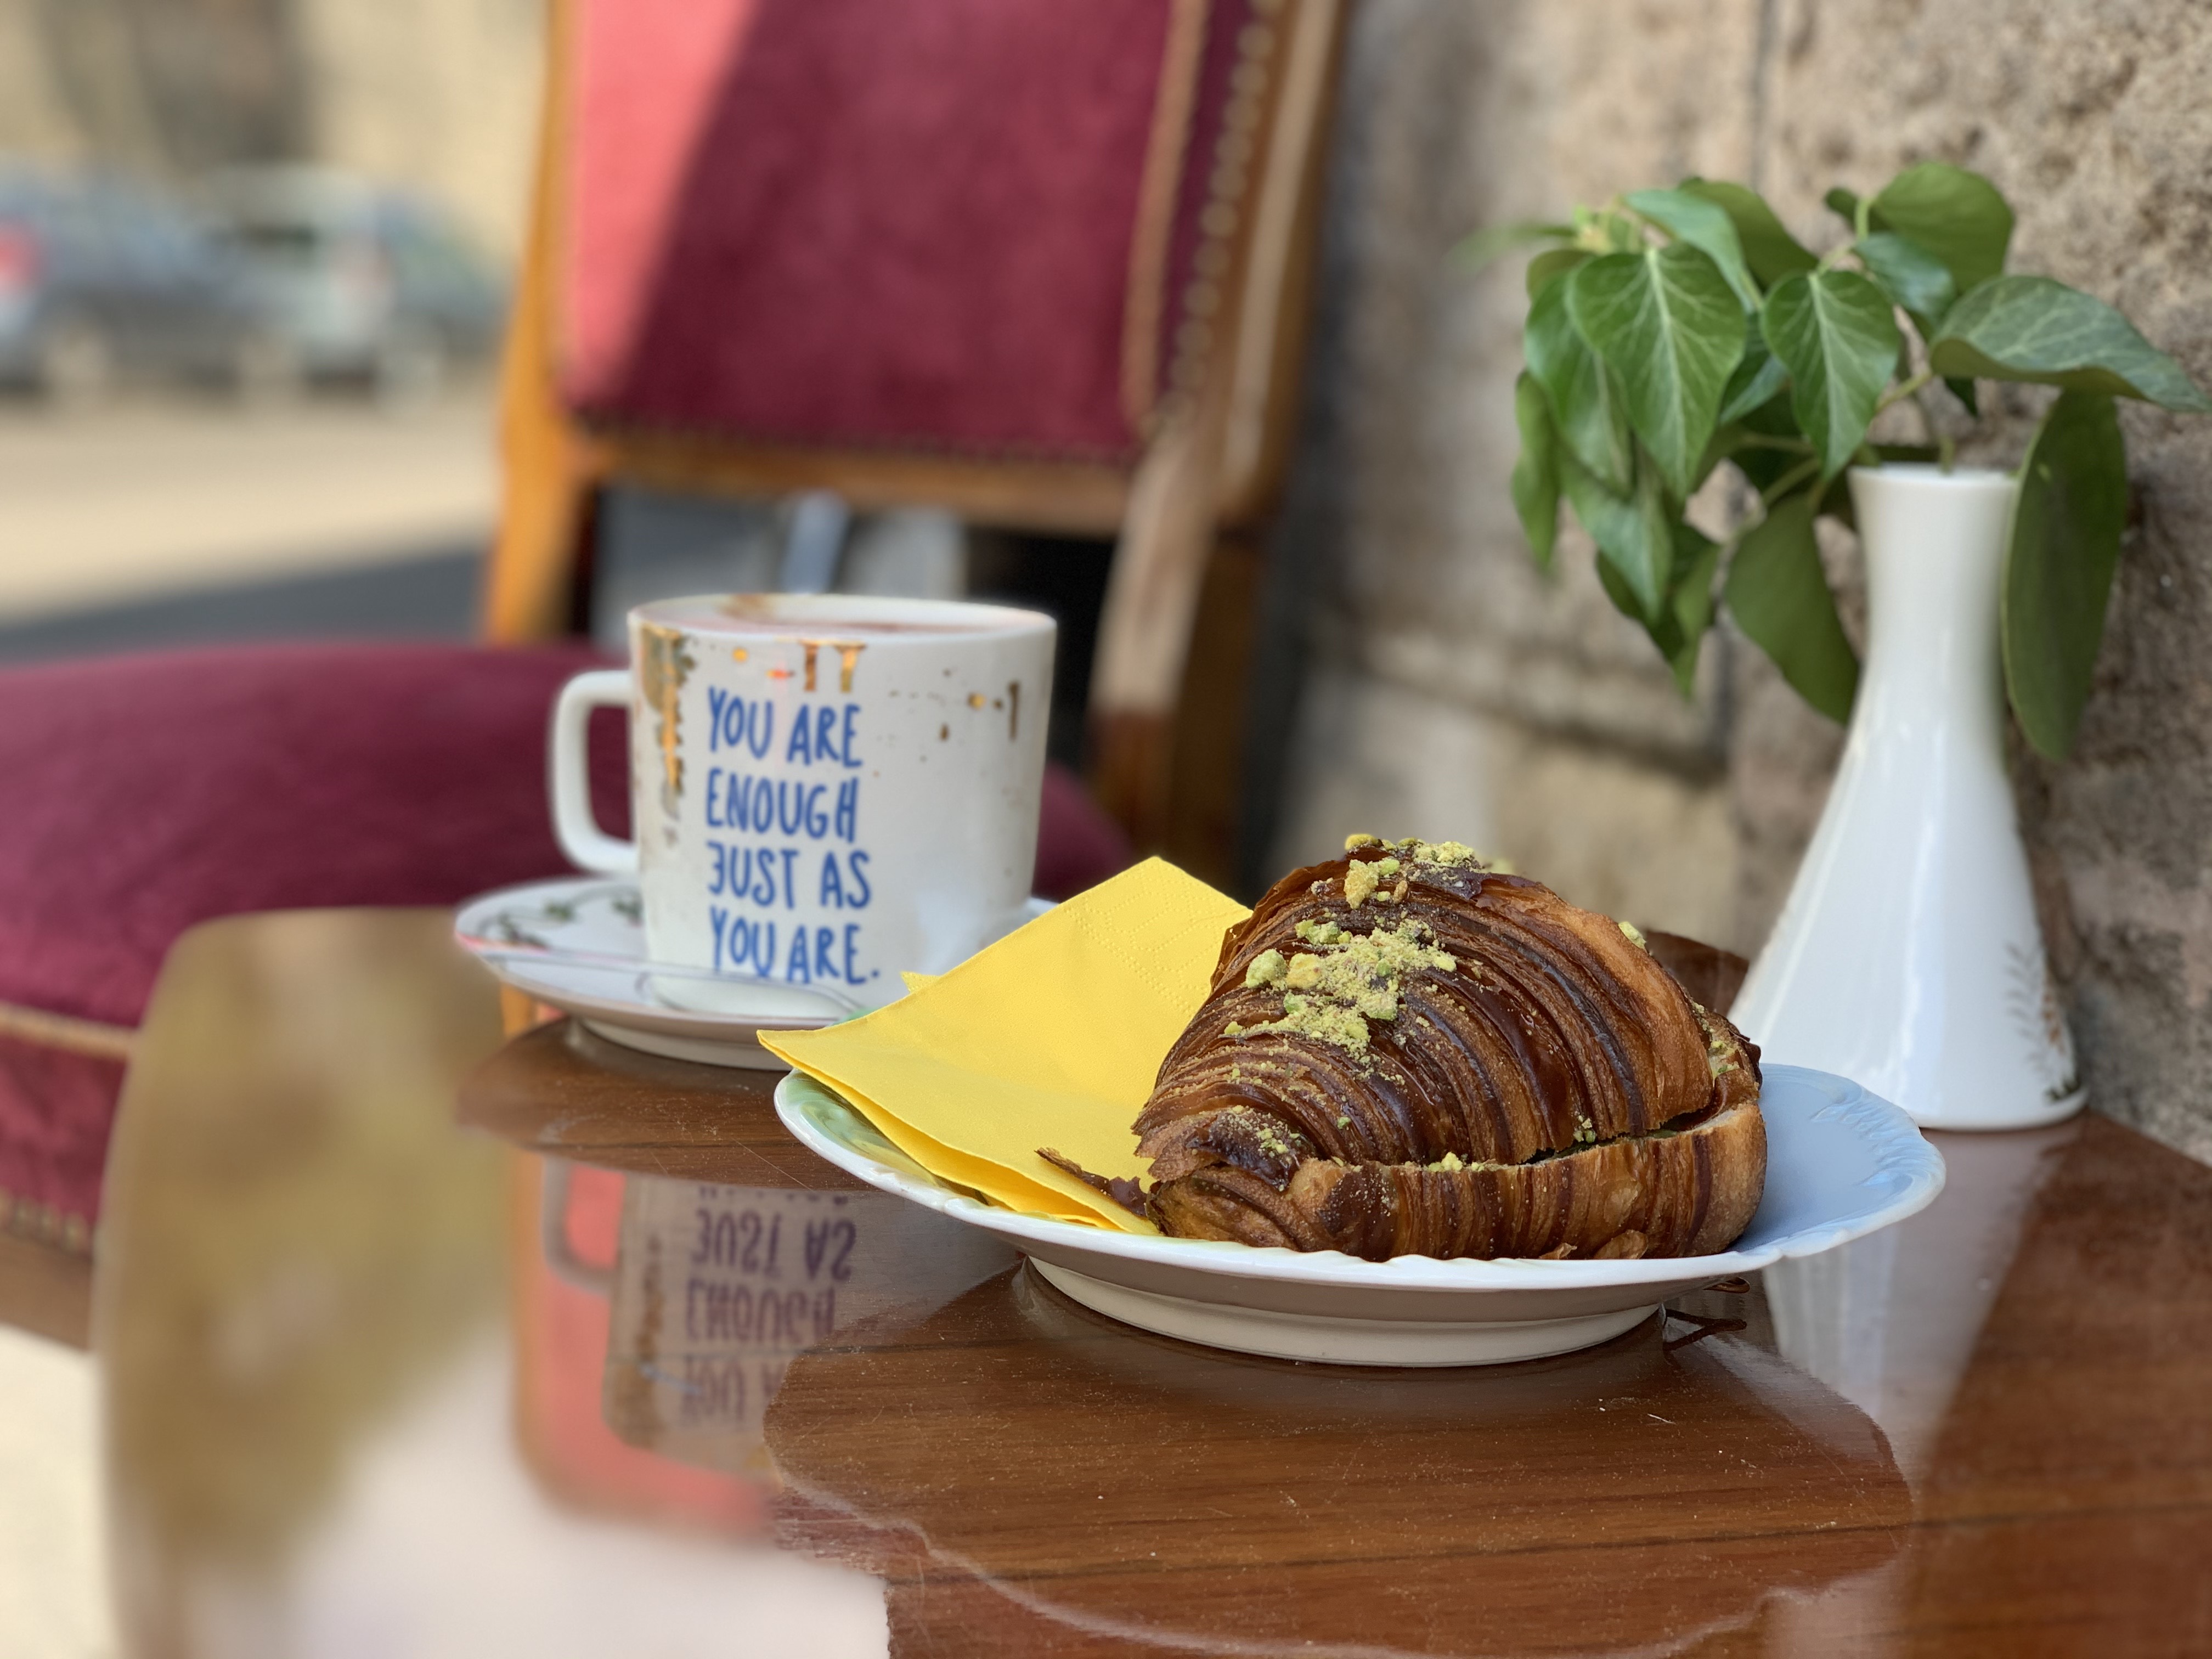 Habos kávé és skandináv péksüti a Várban – By Beans kávéval és Freyja croissant-nal újít a NOS